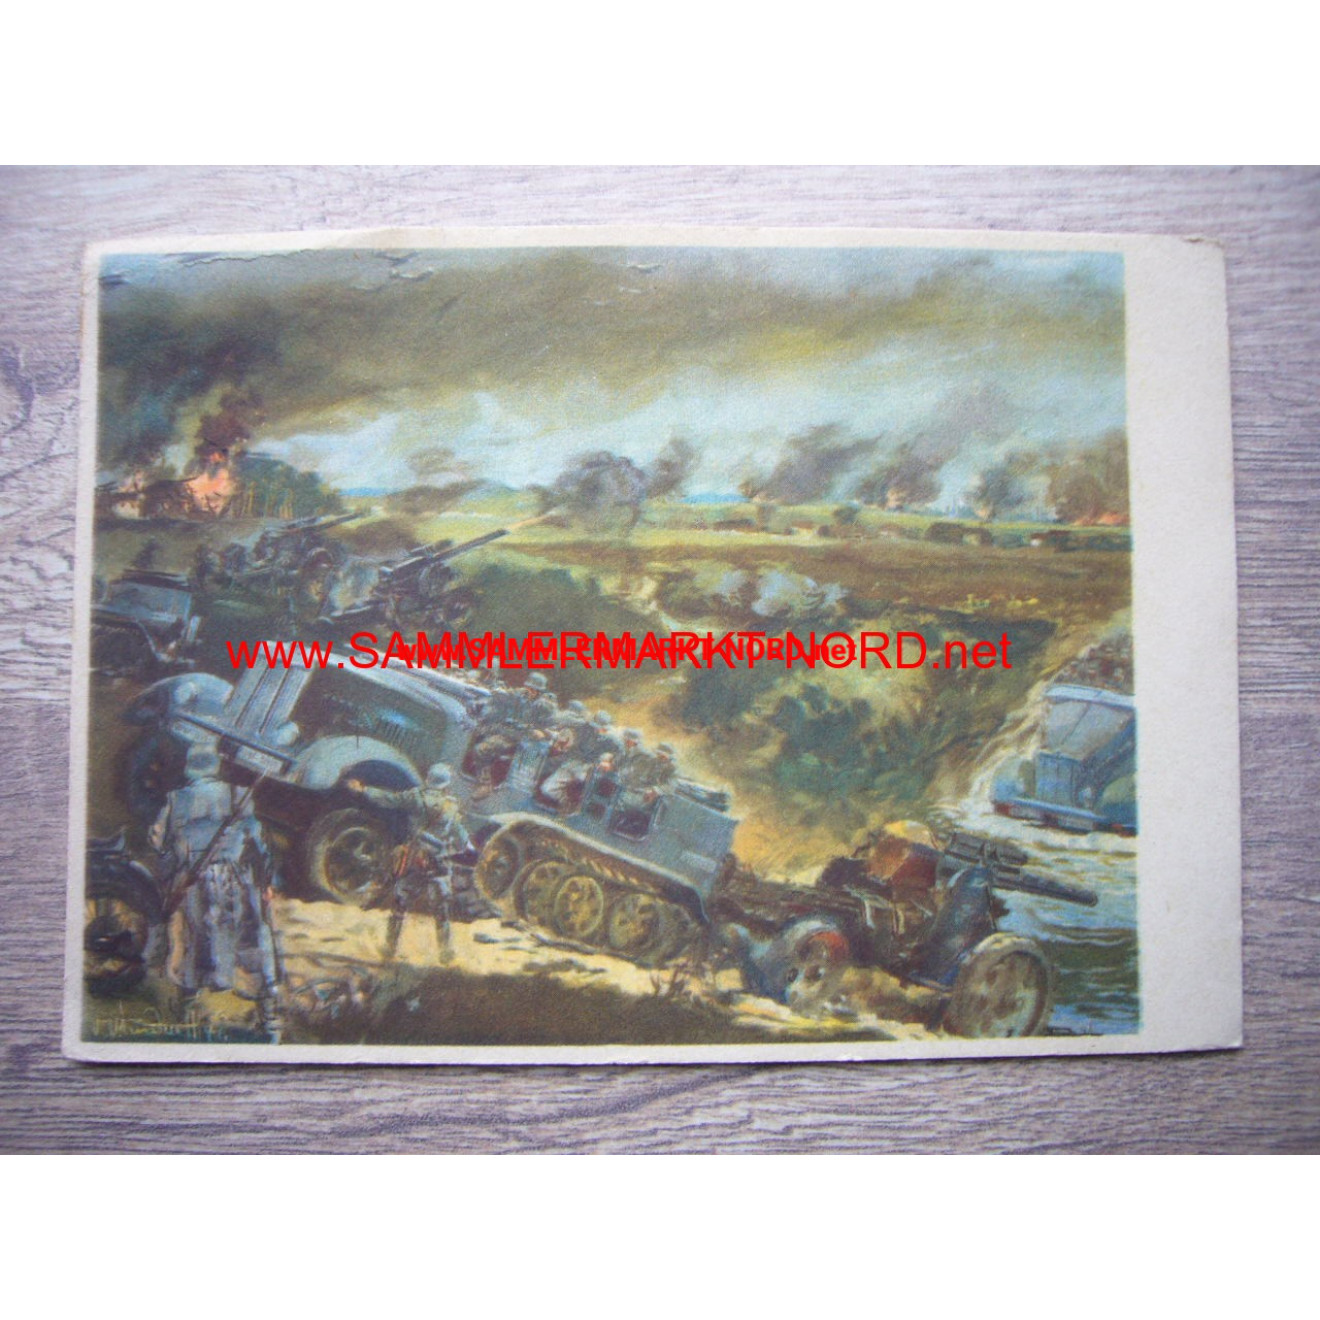 Artillerie im Kampf - Postkarte